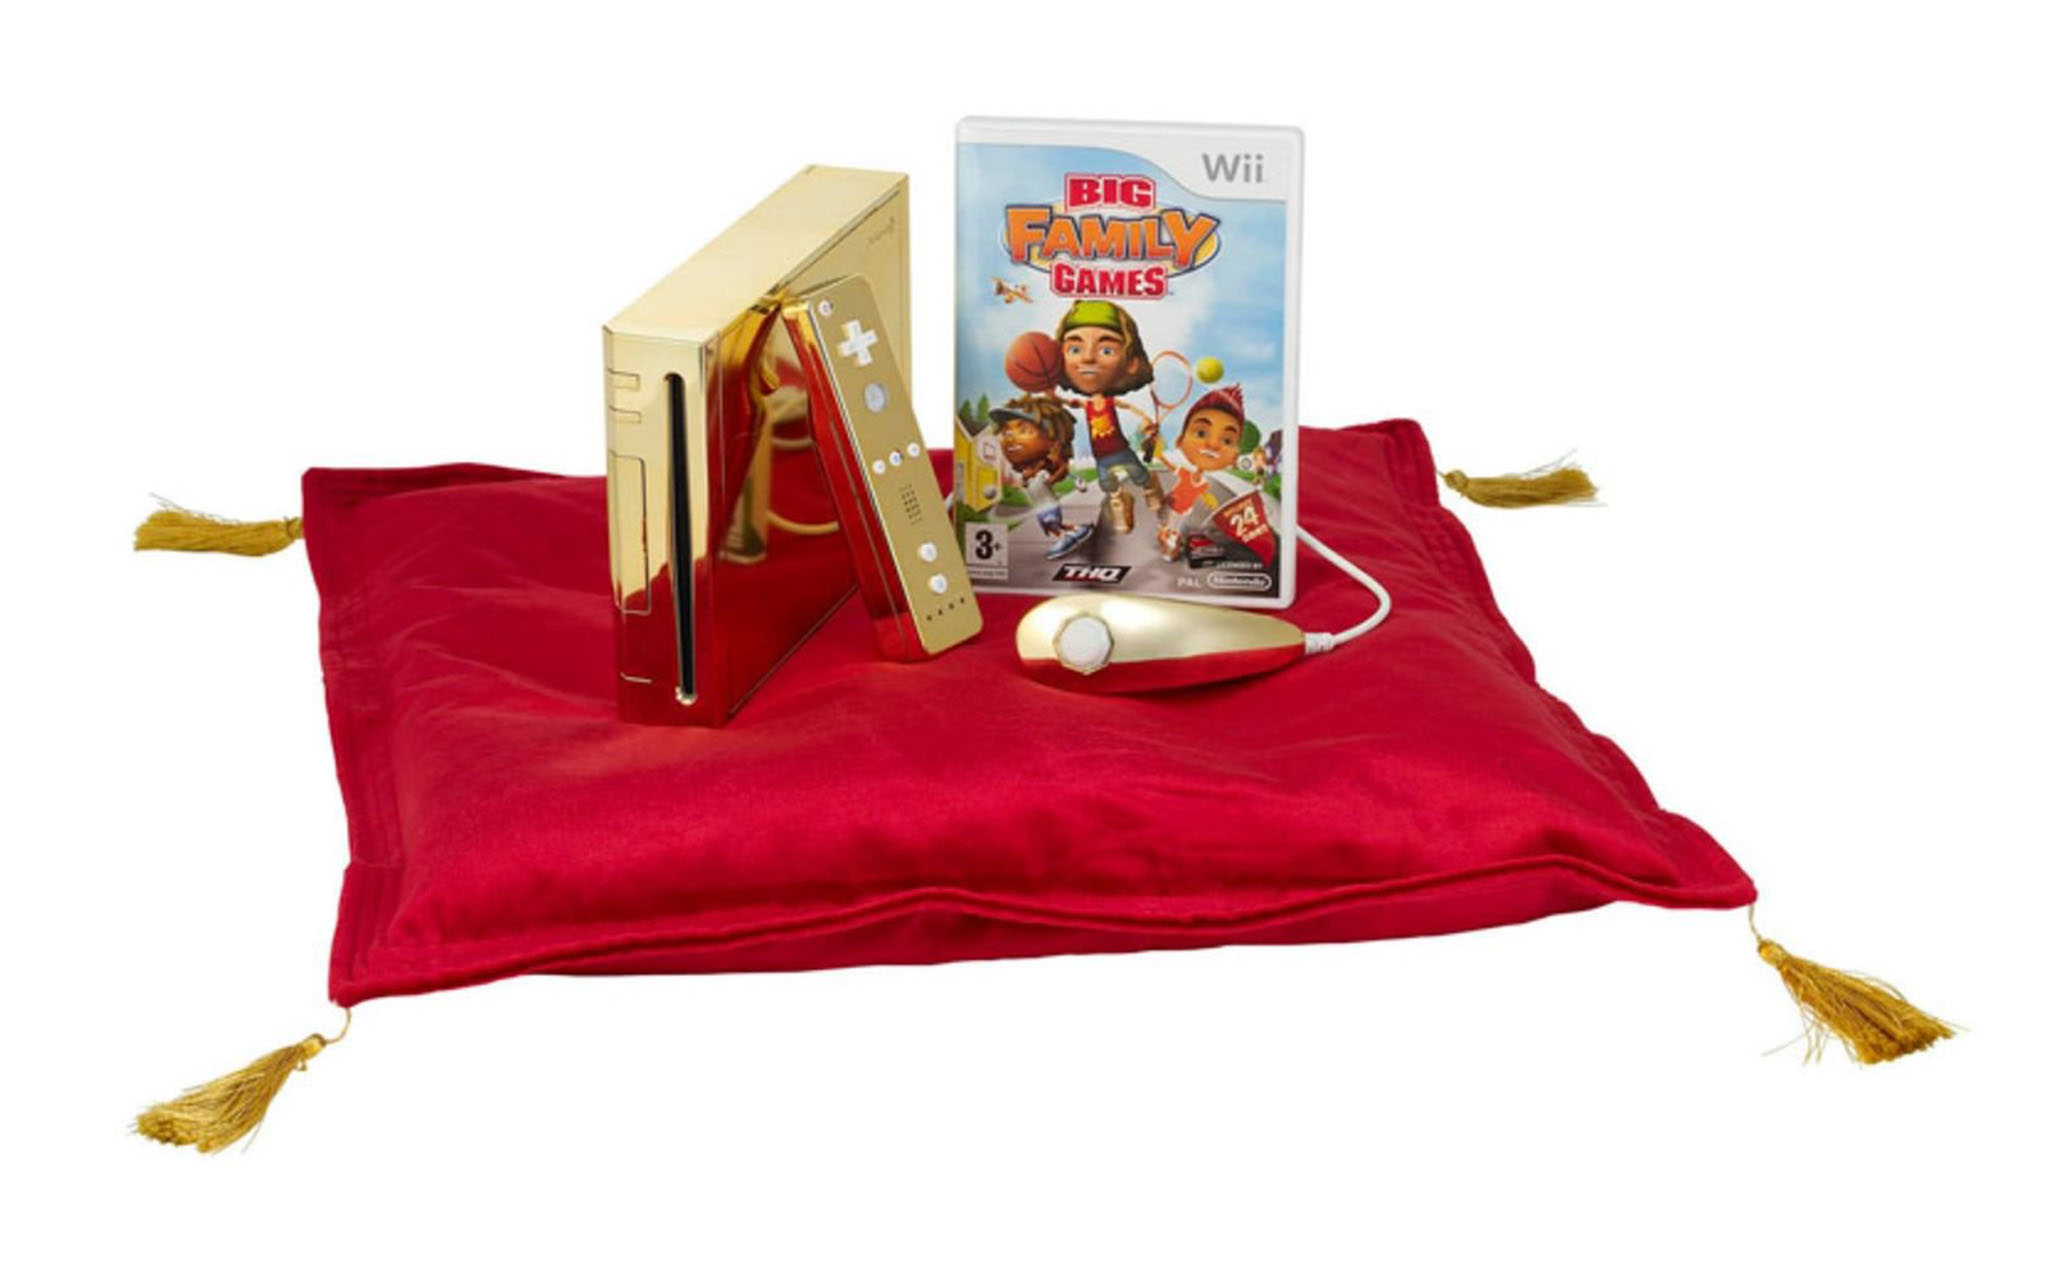 Chiếc máy Wii mạ vàng tặng nữ hoàng Elizabeth II được rao bán, giá 300.000 USD